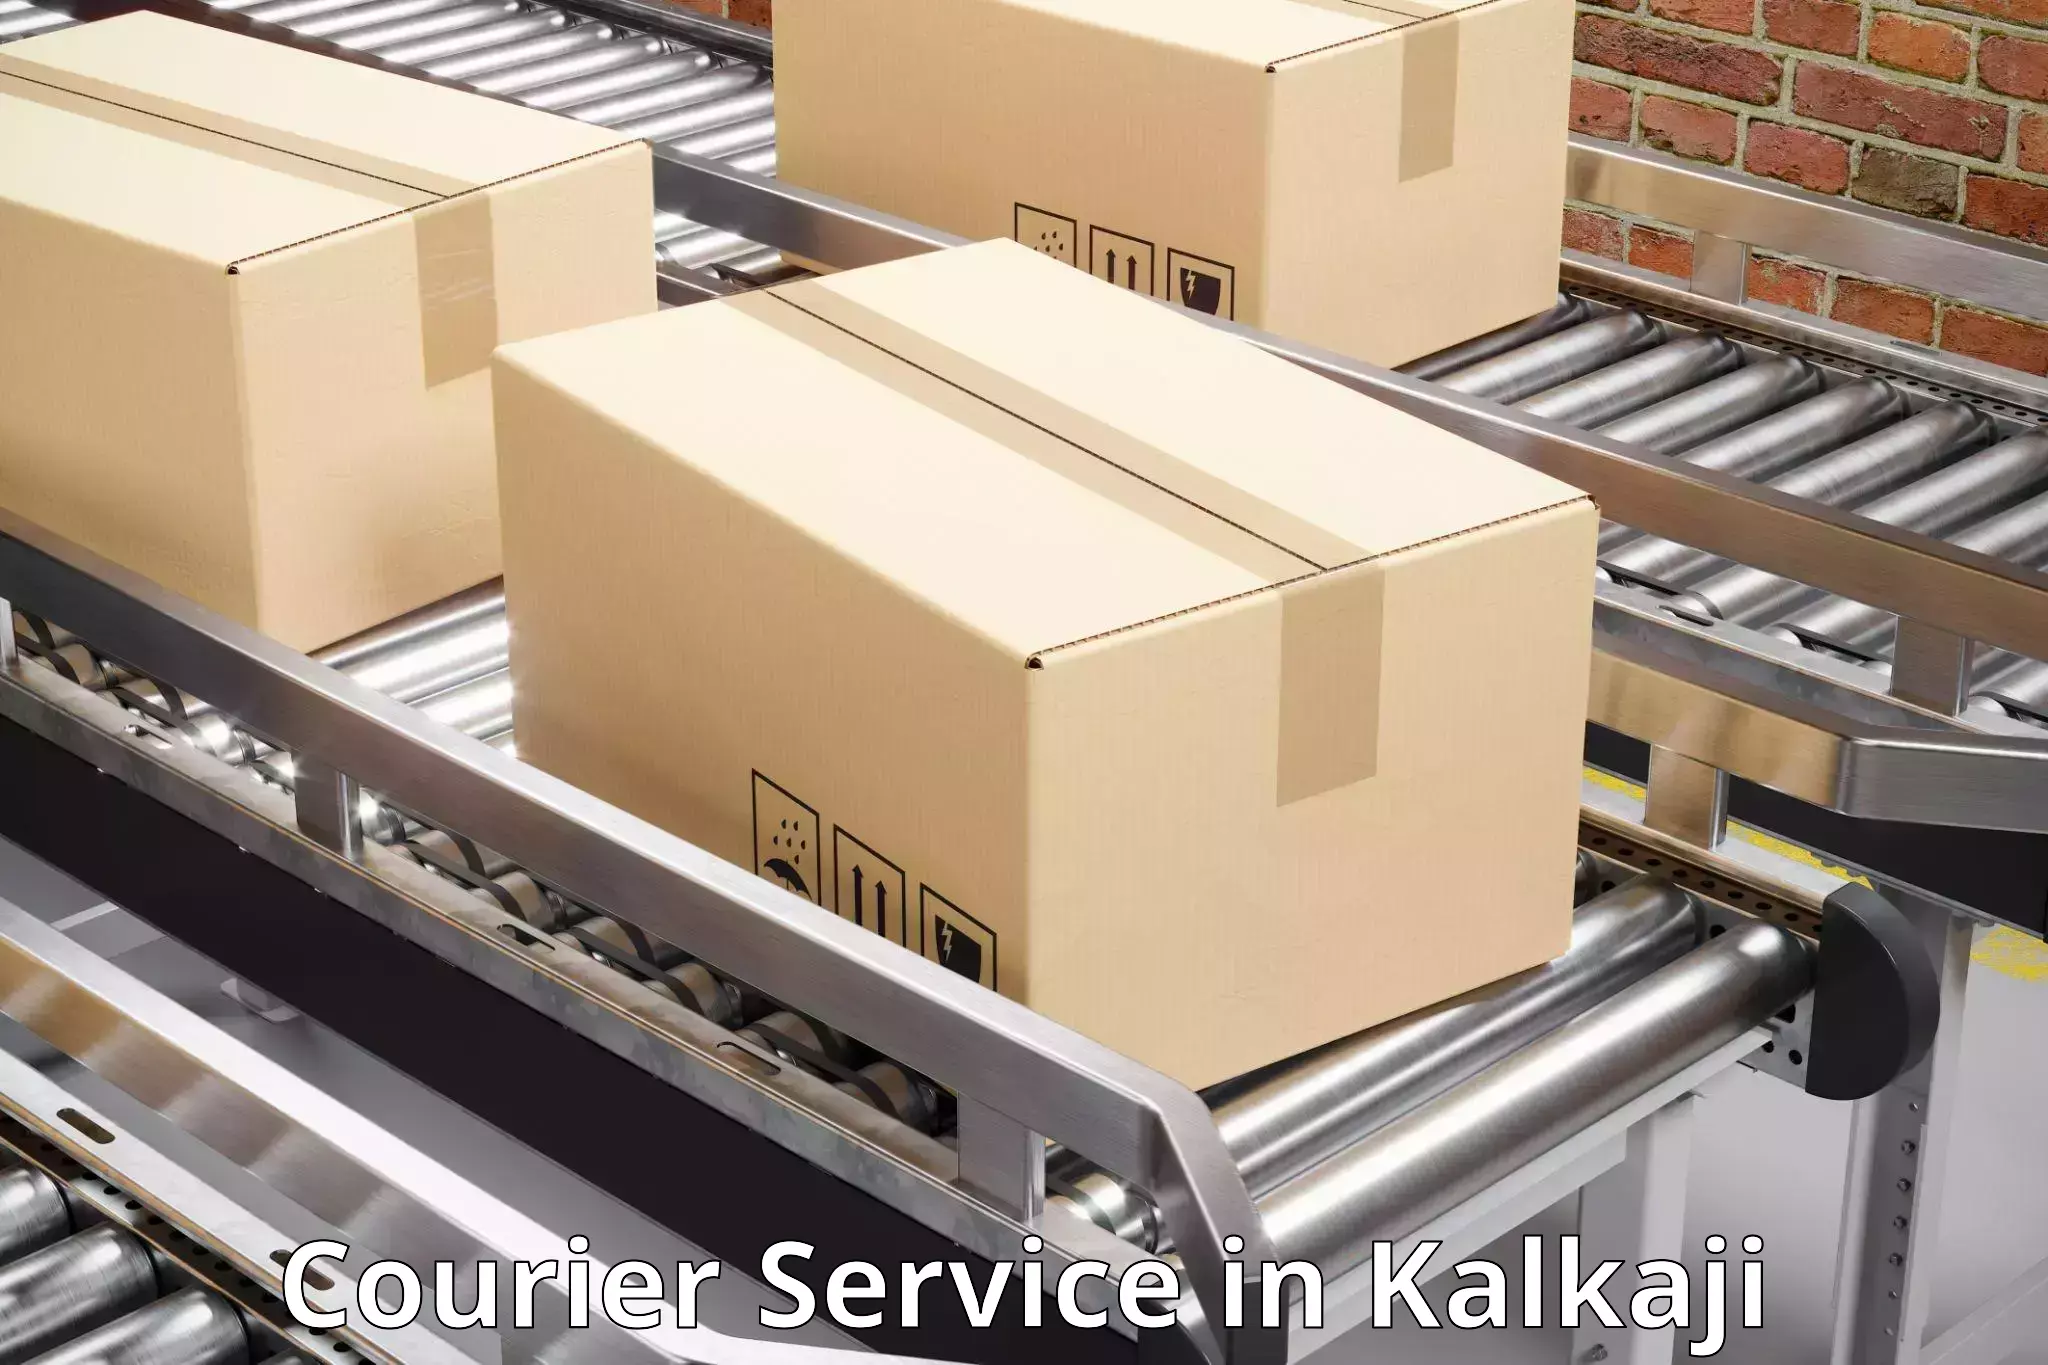 High-priority parcel service in Kalkaji